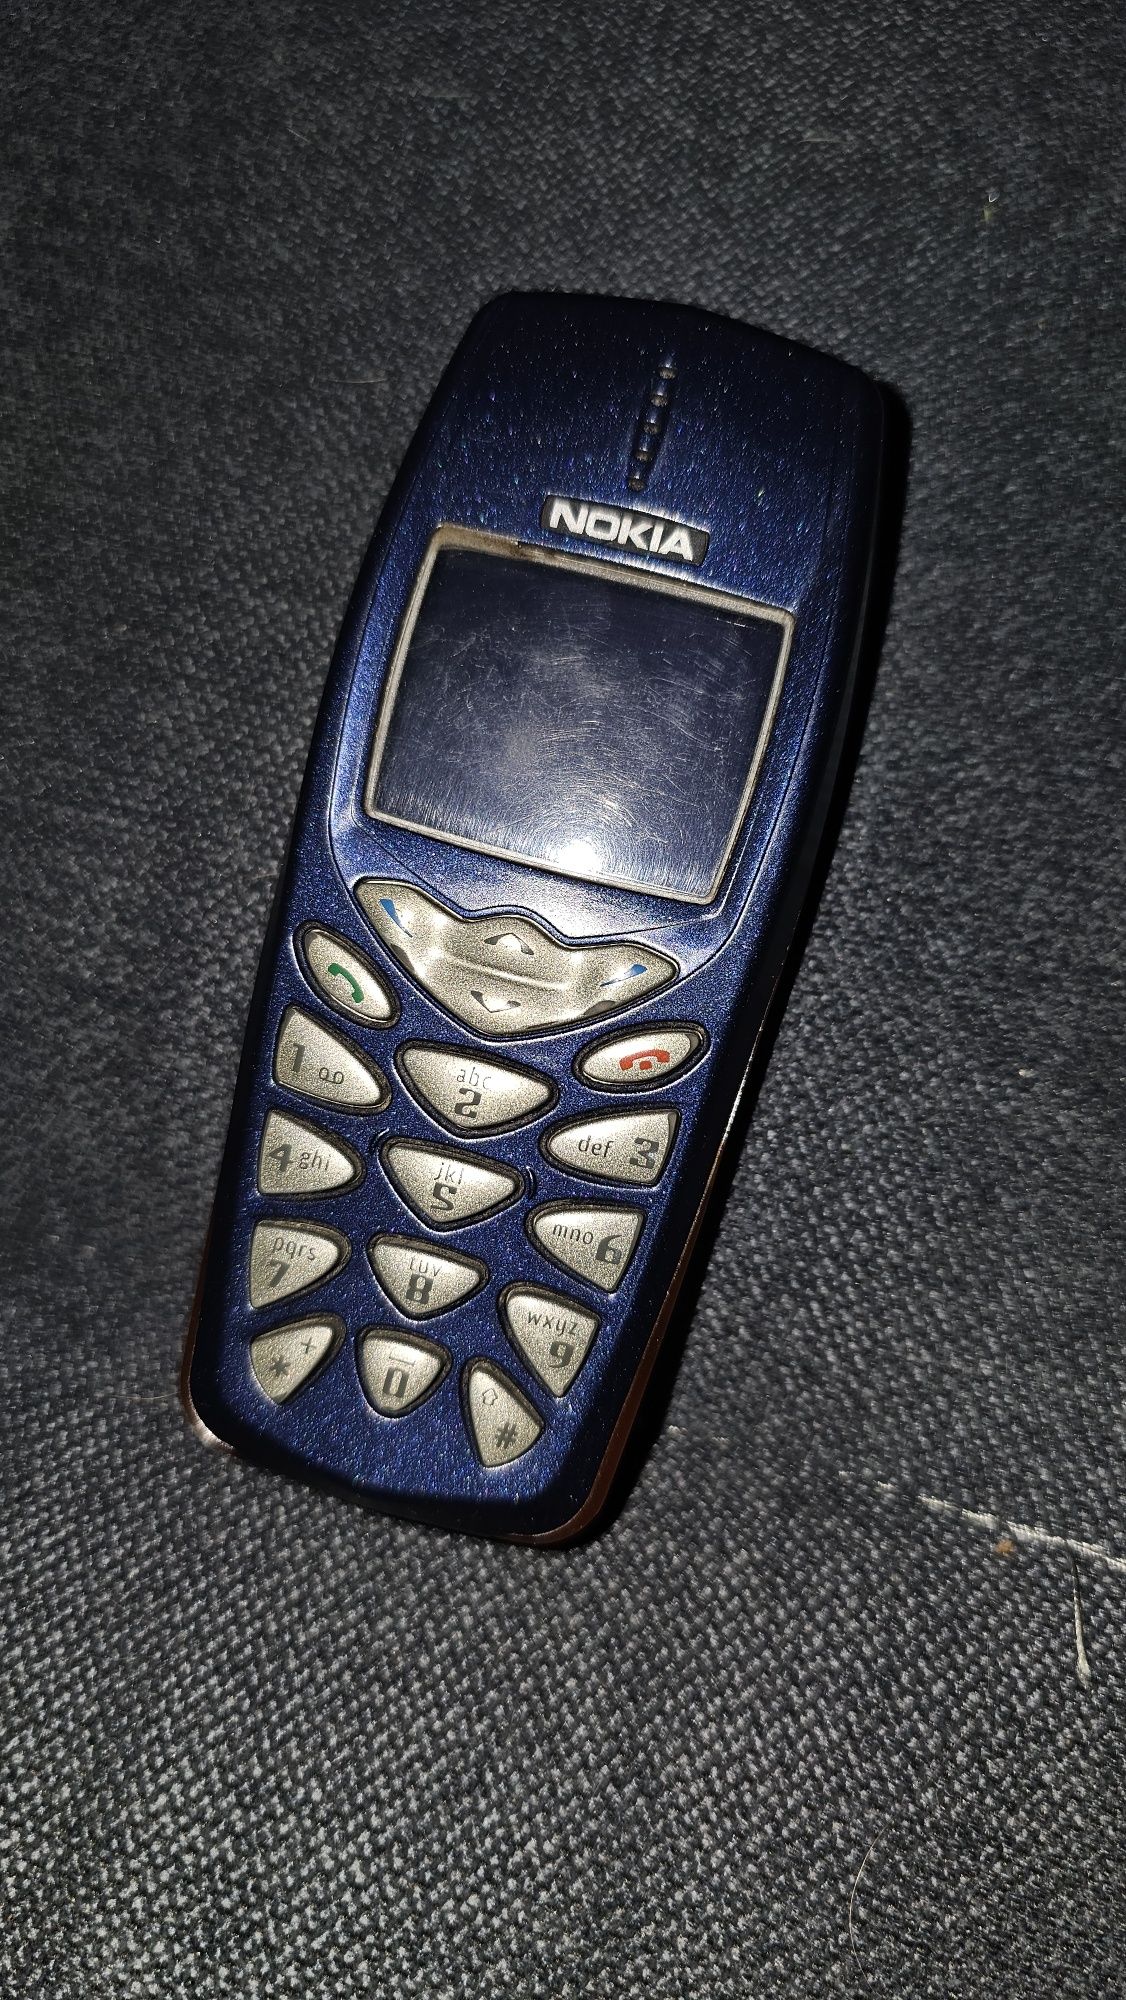 Nokia 3510i zadbana folia